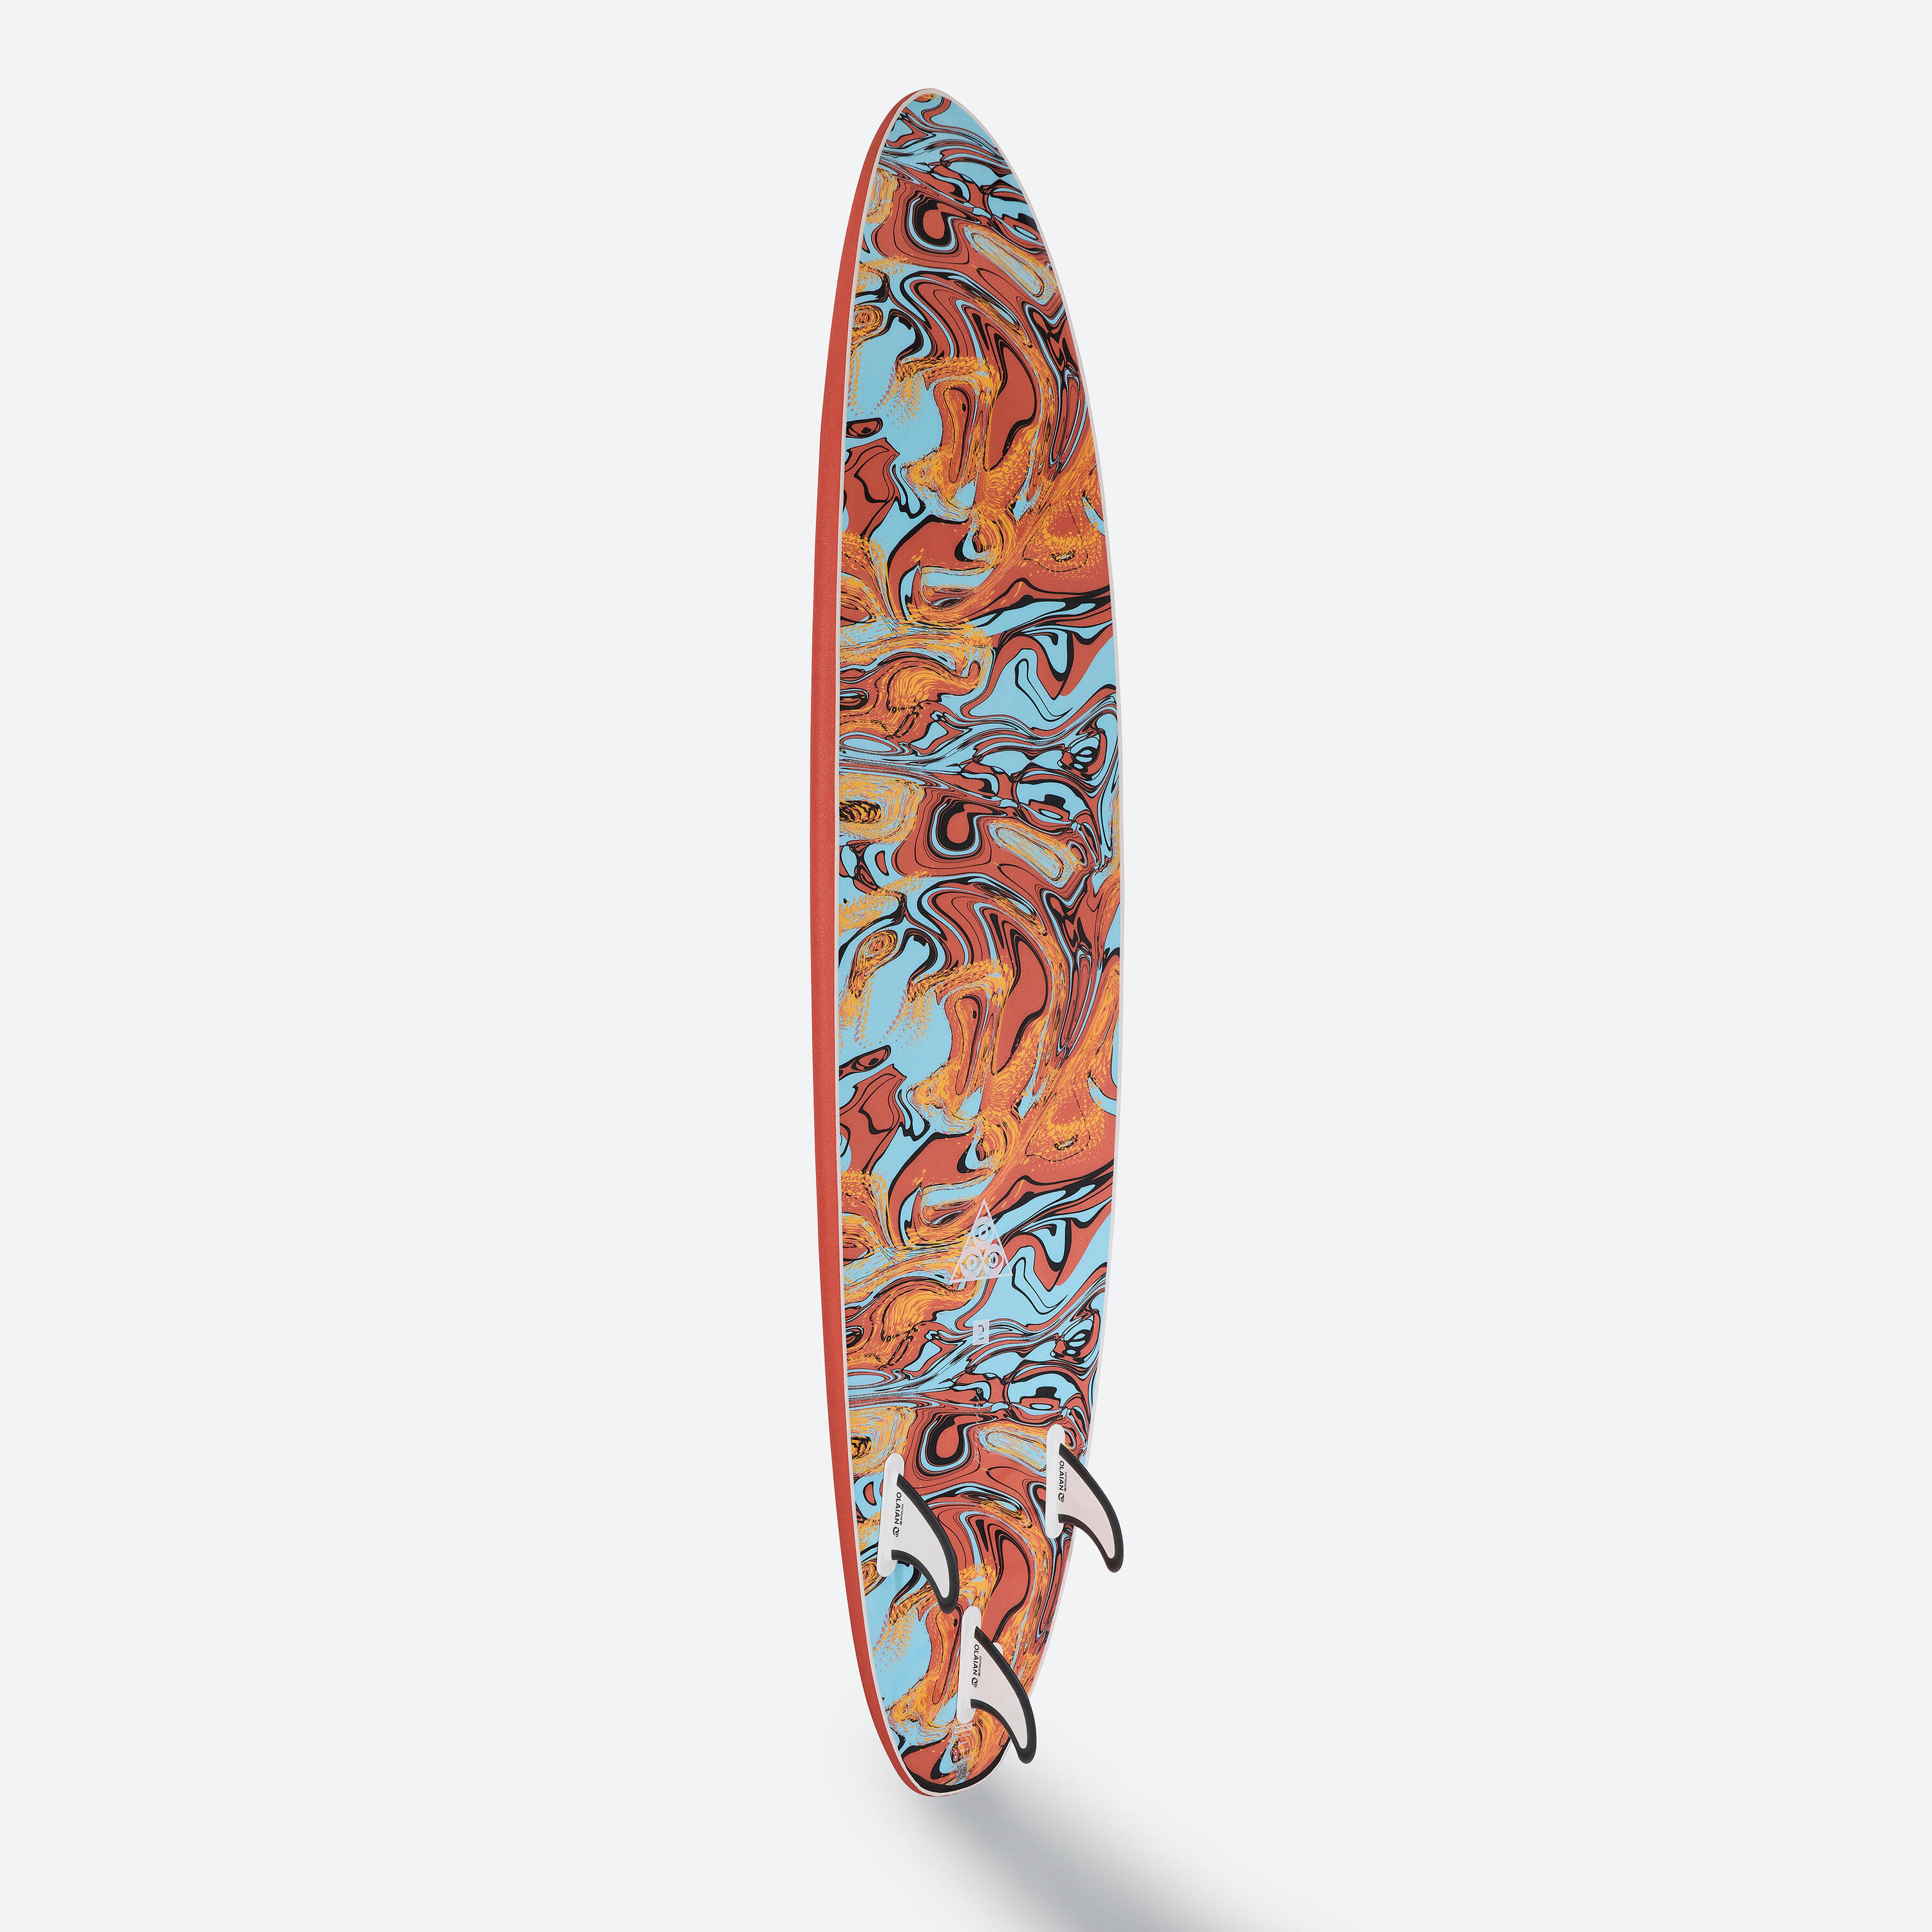 Foam surfboard 7' - 500 orange 4/10